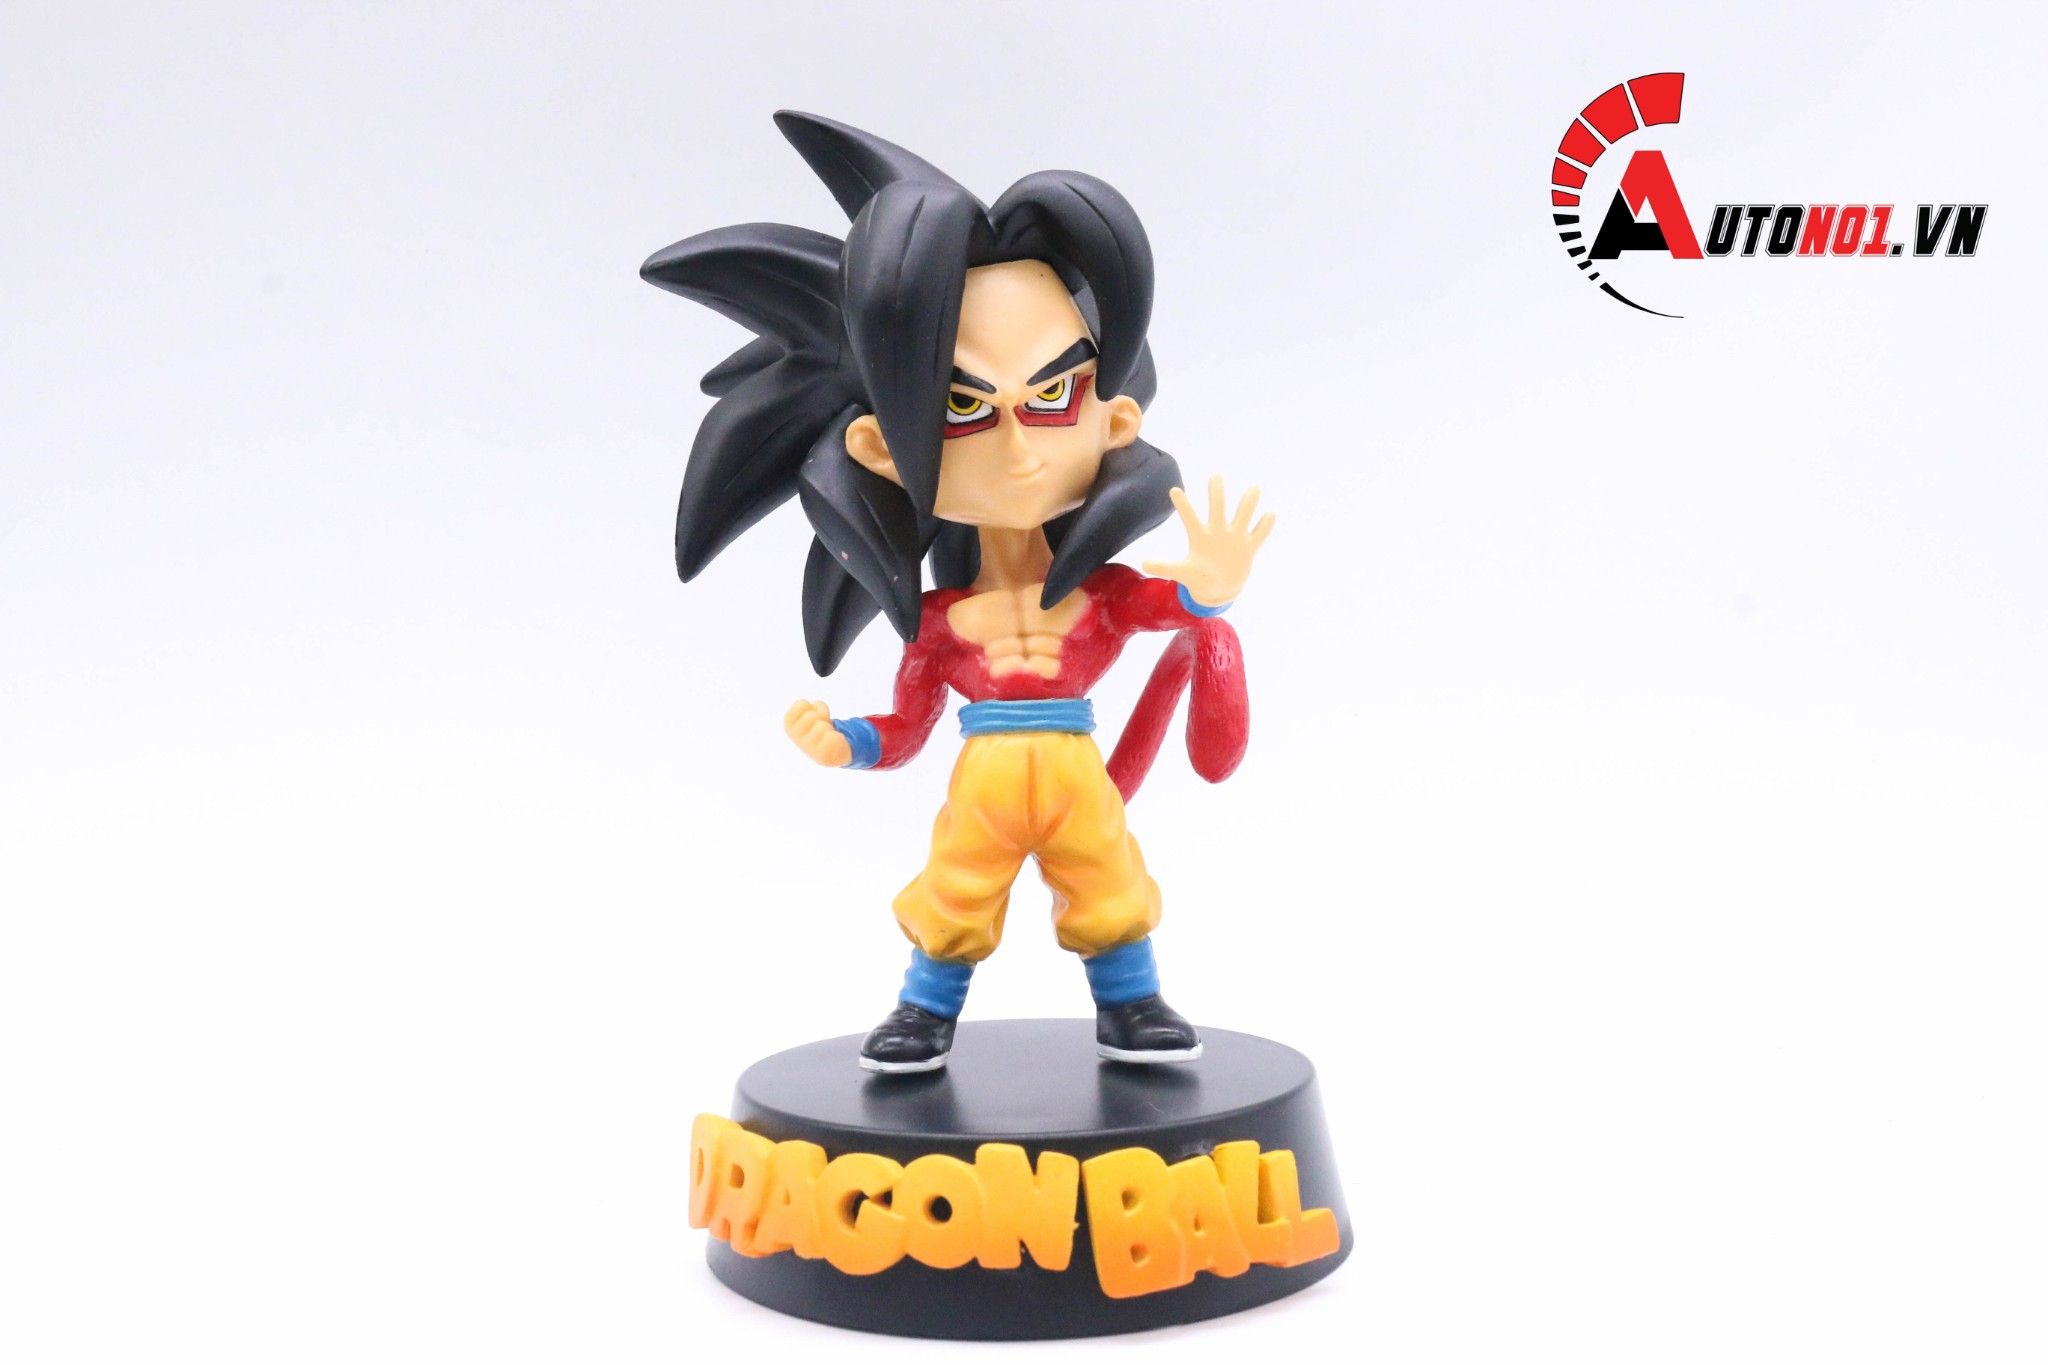  Mô hình nhân vật Dragonball Songoku Ssj4 15cm 6156 